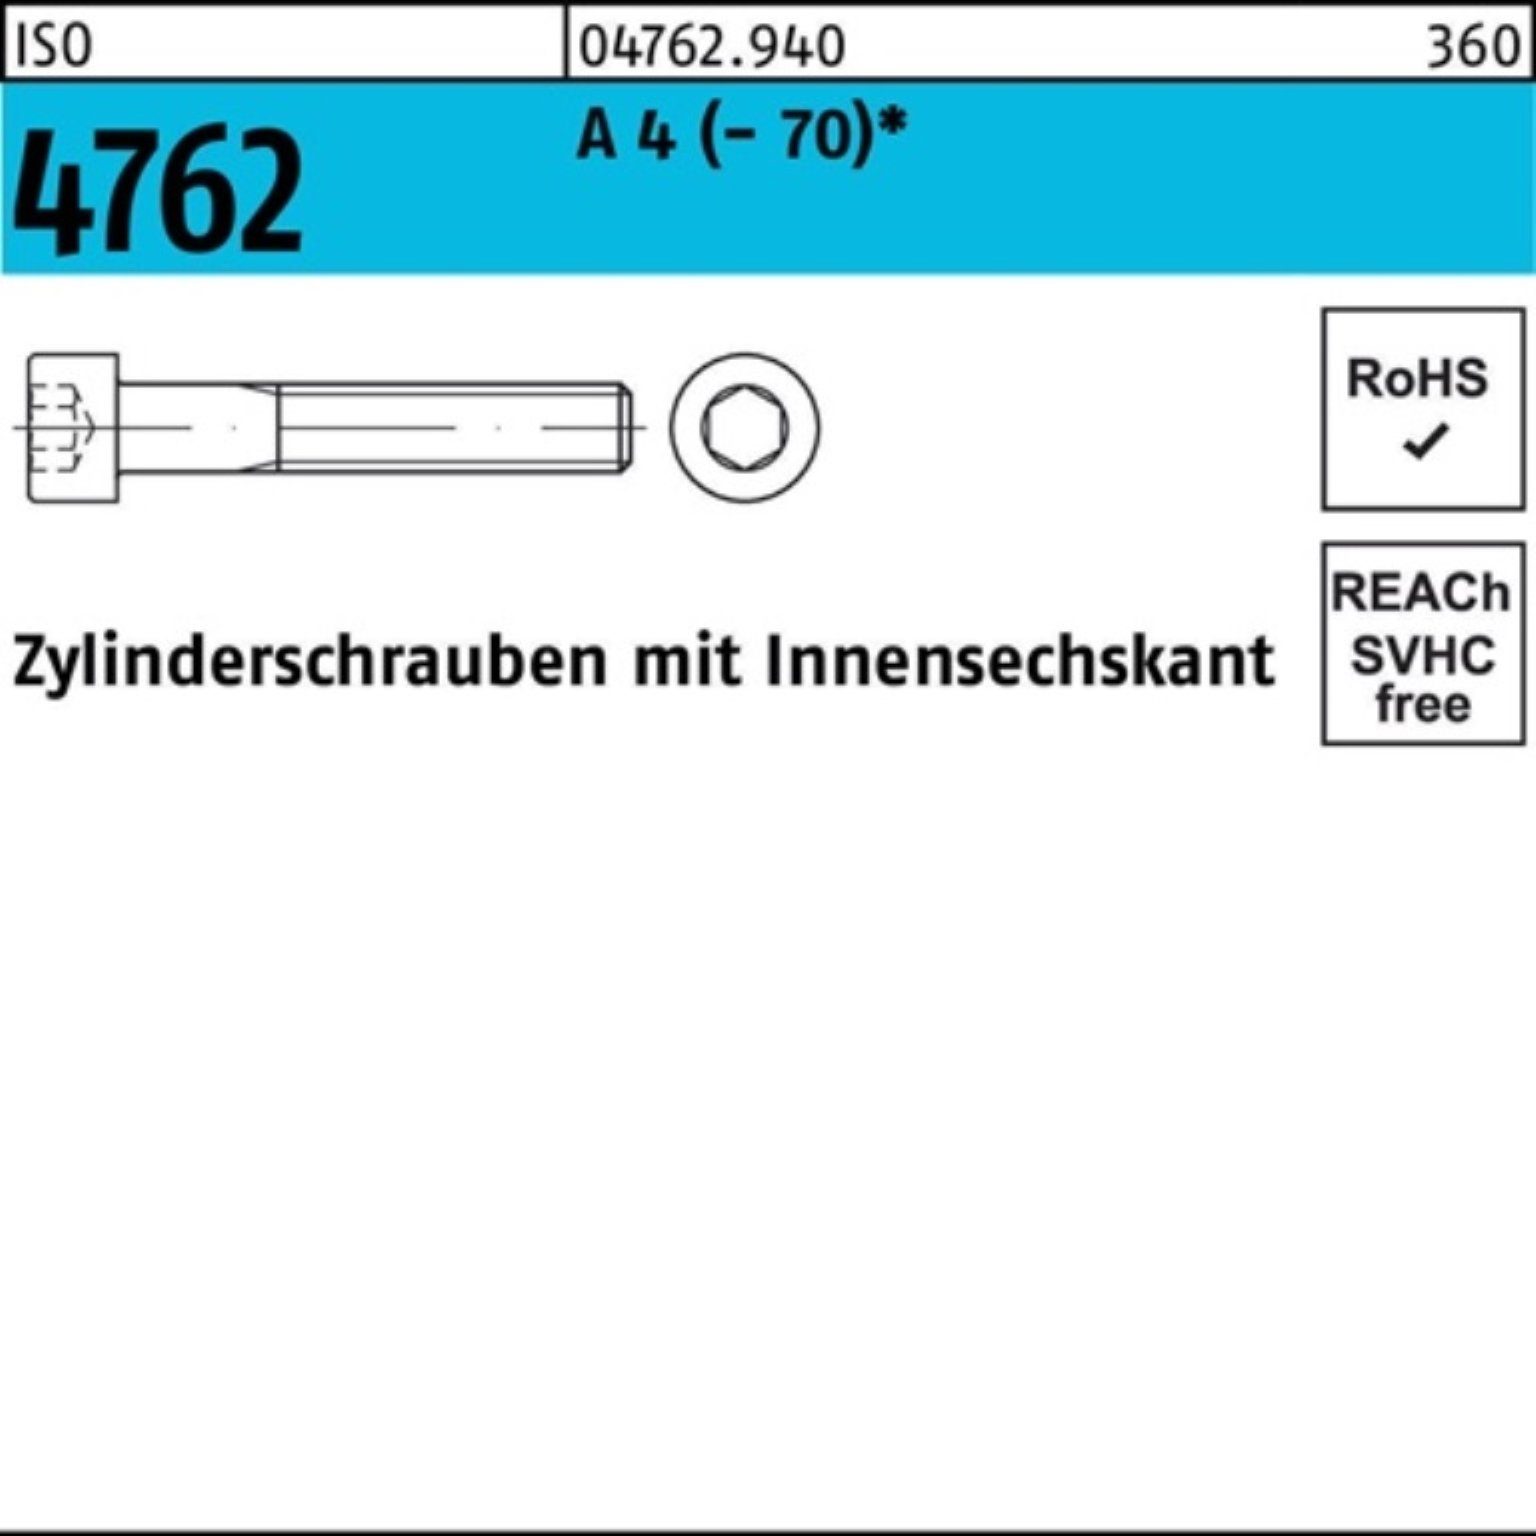 Angebotspreis Reyher Zylinderschraube 100er Pack (70) 4762 ISO 50 40 A 4 M14x Innen-6kt S Zylinderschraube